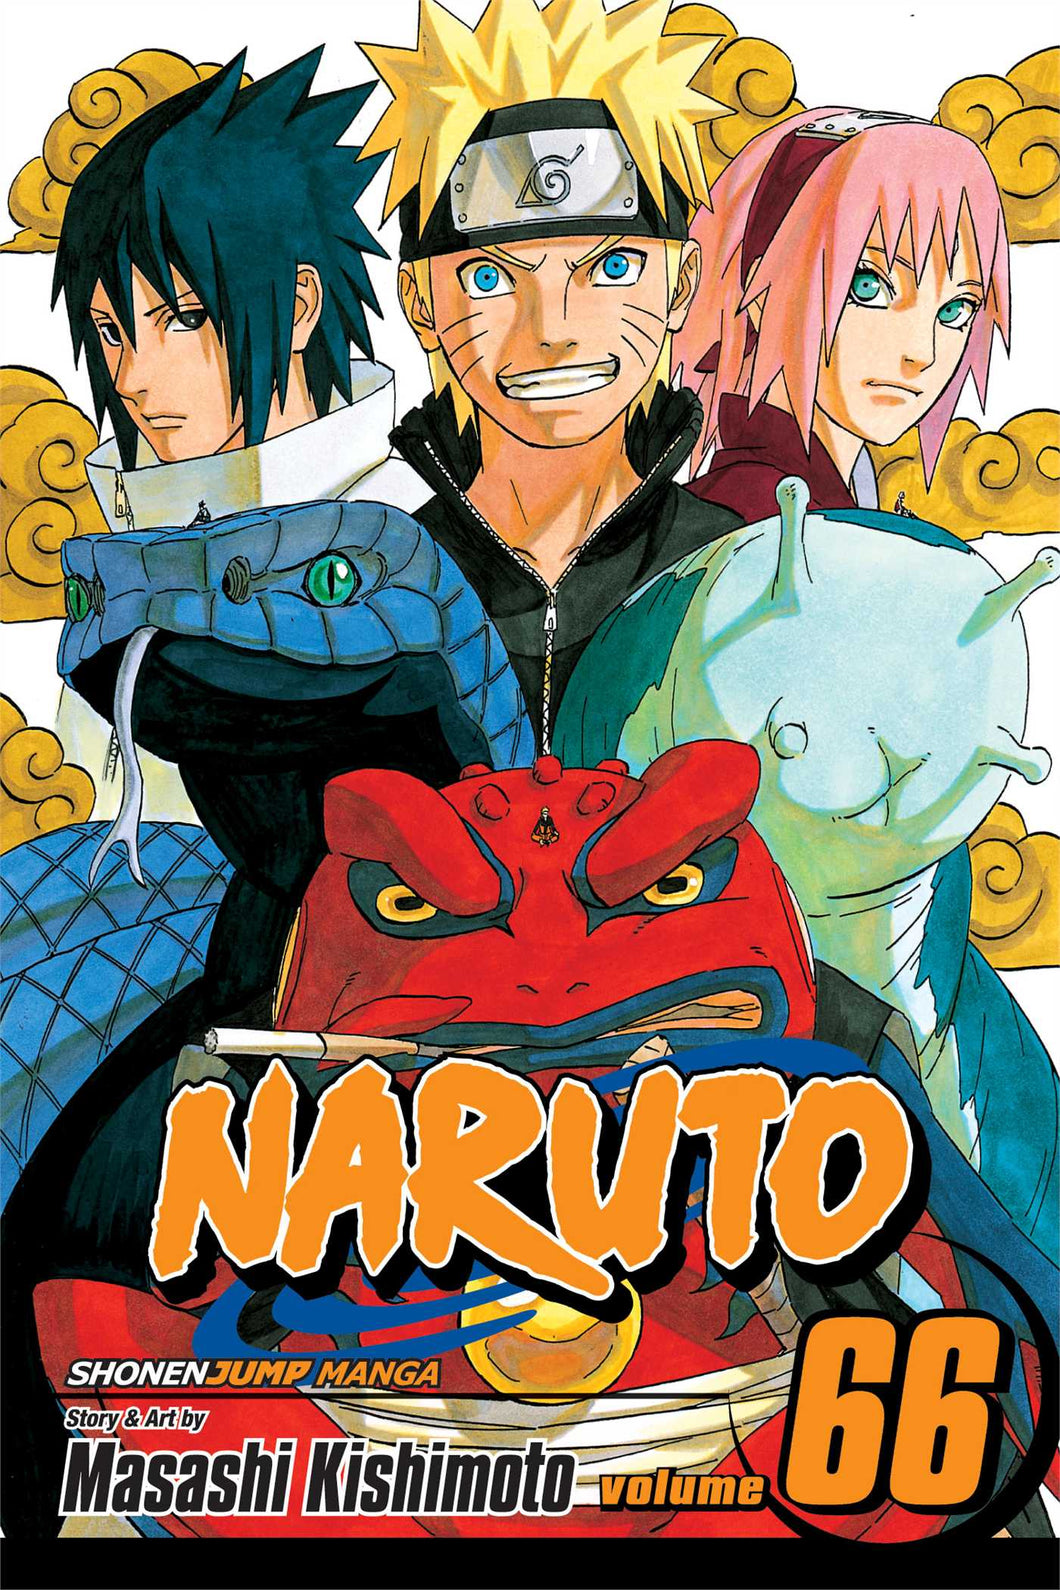 Naruto Volume 66